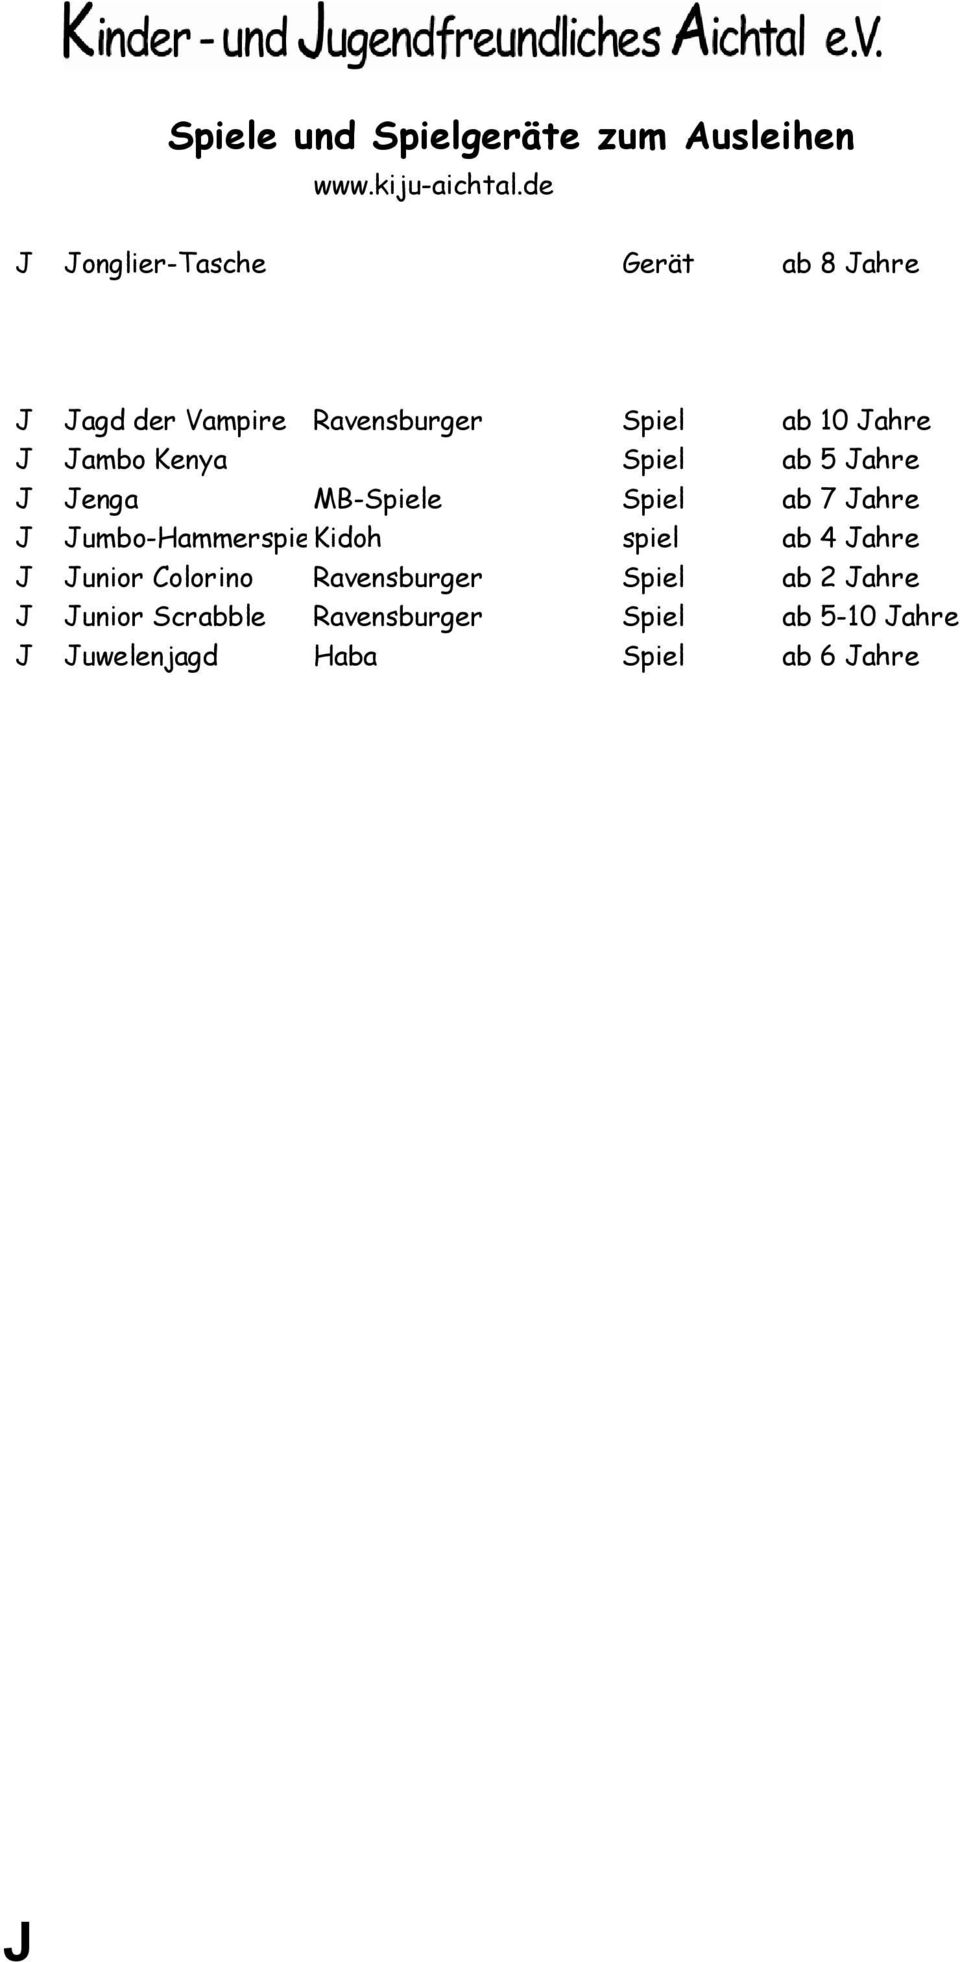 Jumbo-HammerspieKidoh spiel ab 4 Jahre J Junior Colorino Ravensburger Spiel ab 2